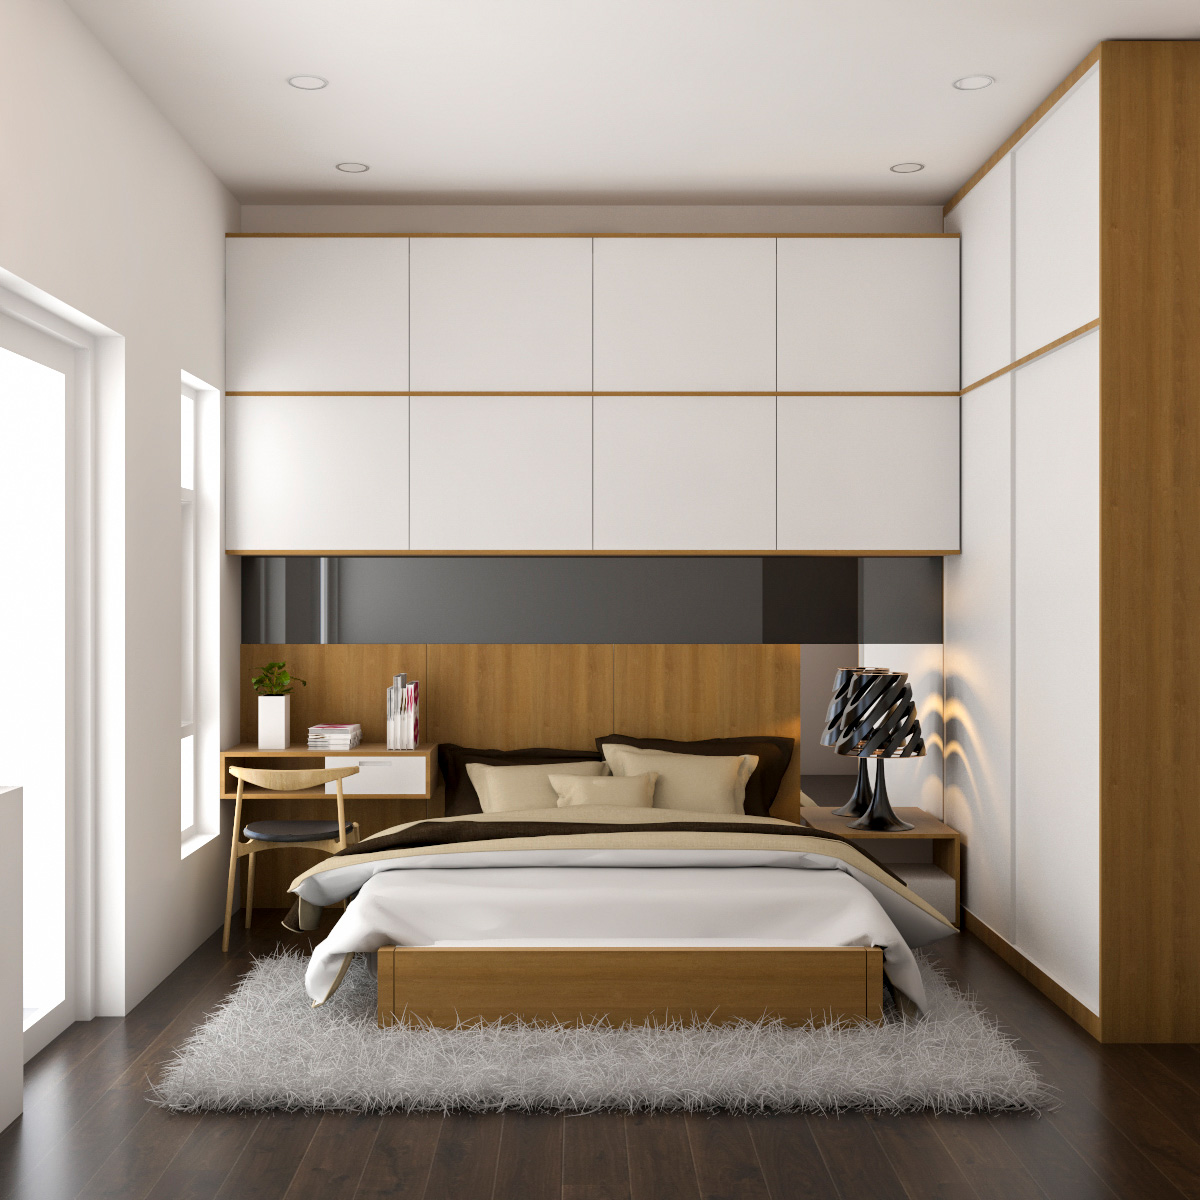 Phòng ngủ, phong cách hiện đại Modern, thiết kế concept nội thất, nhà phố Park Riverside